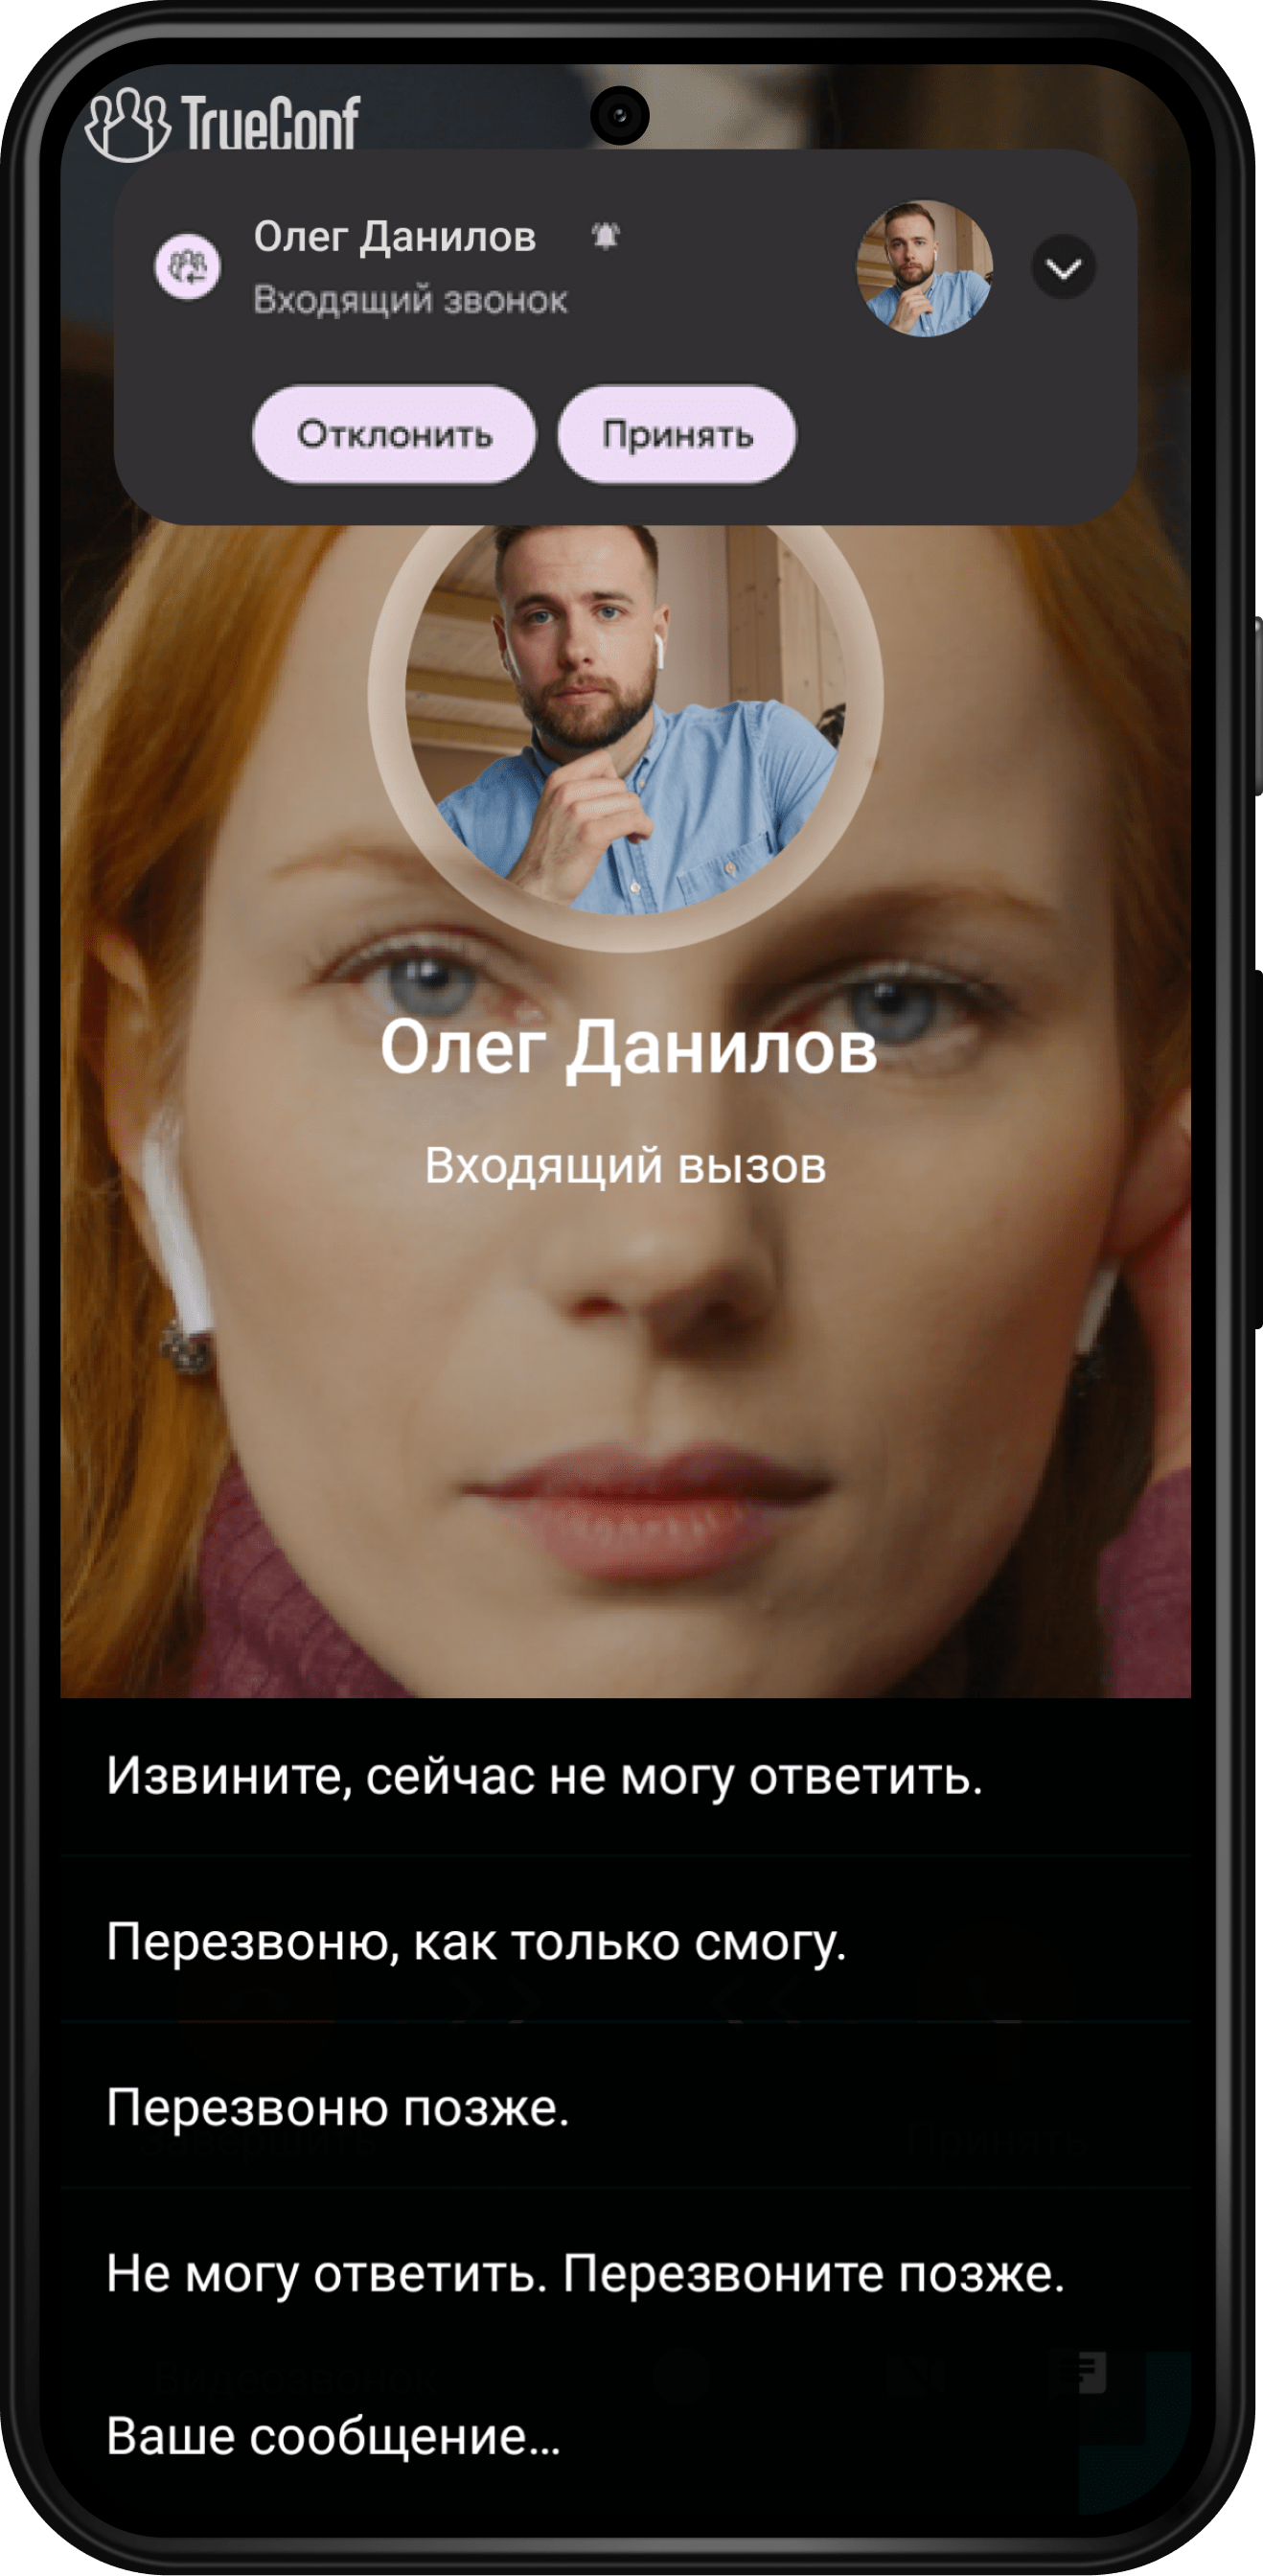 TrueConf 2.0 для Android: видеосвязь и мессенджер в одном приложении 37